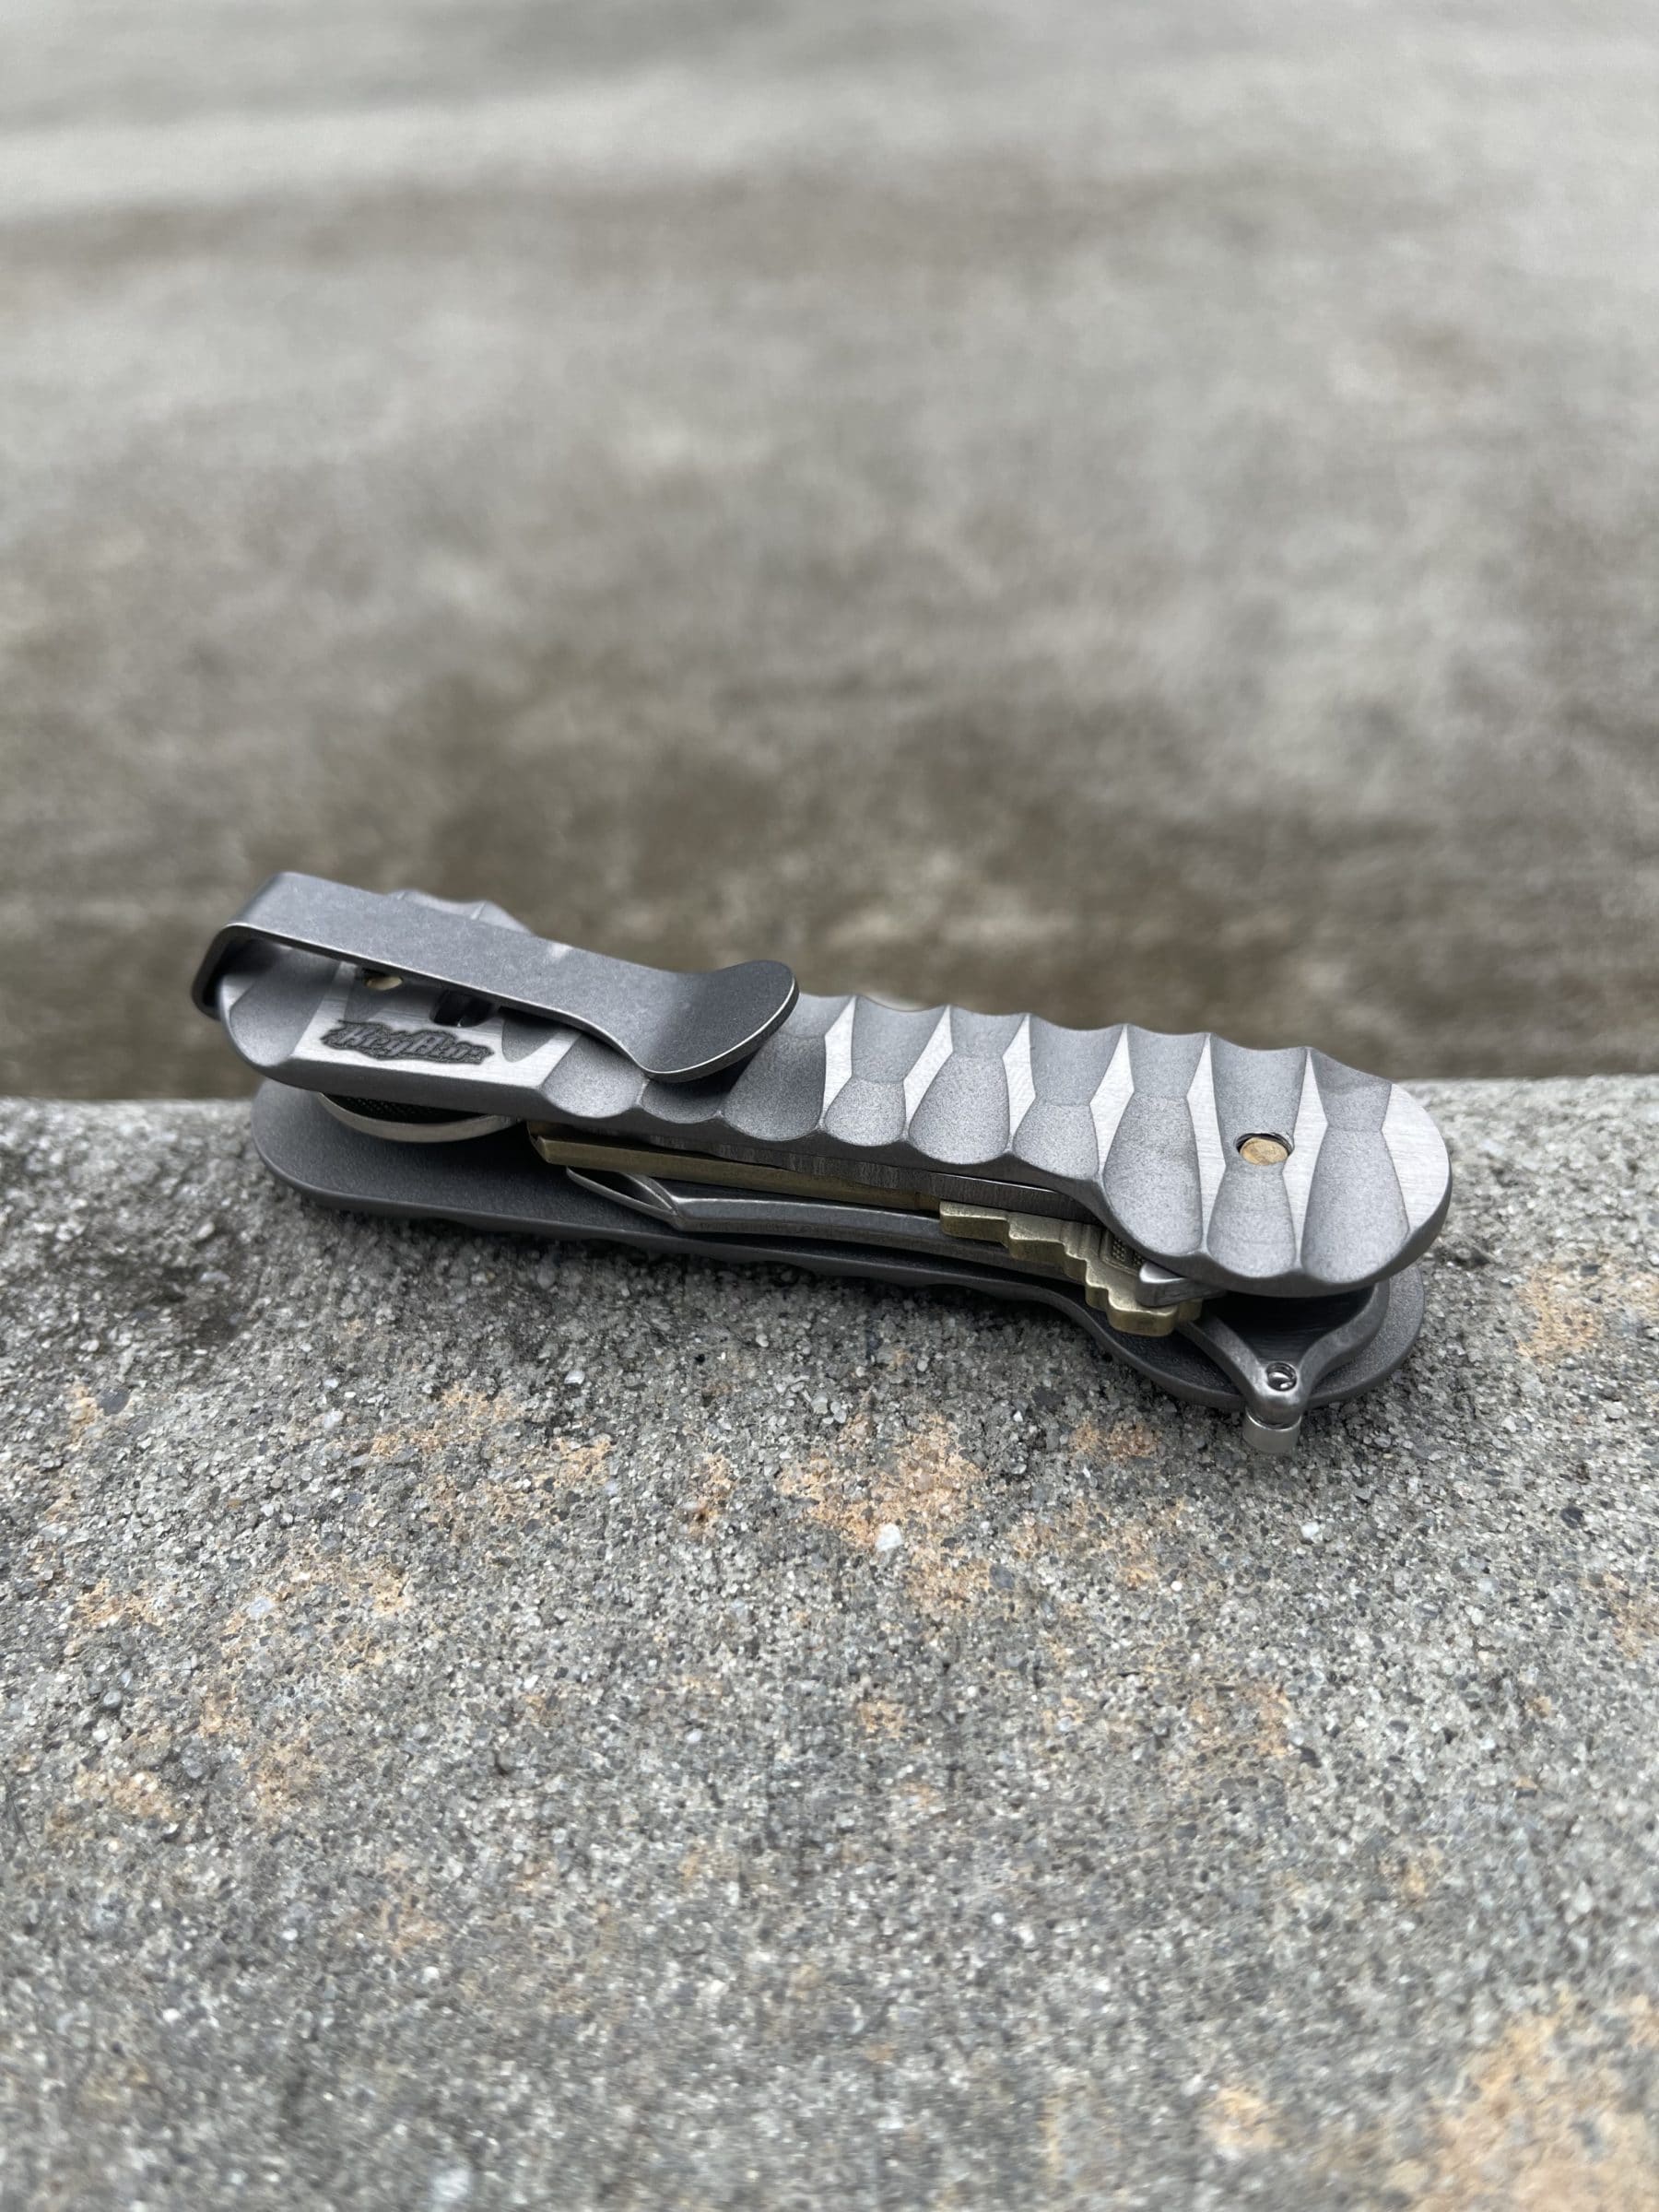 KeyBar Titanium Pocket Key Holder/Organizer (Holds up to 12 Keys